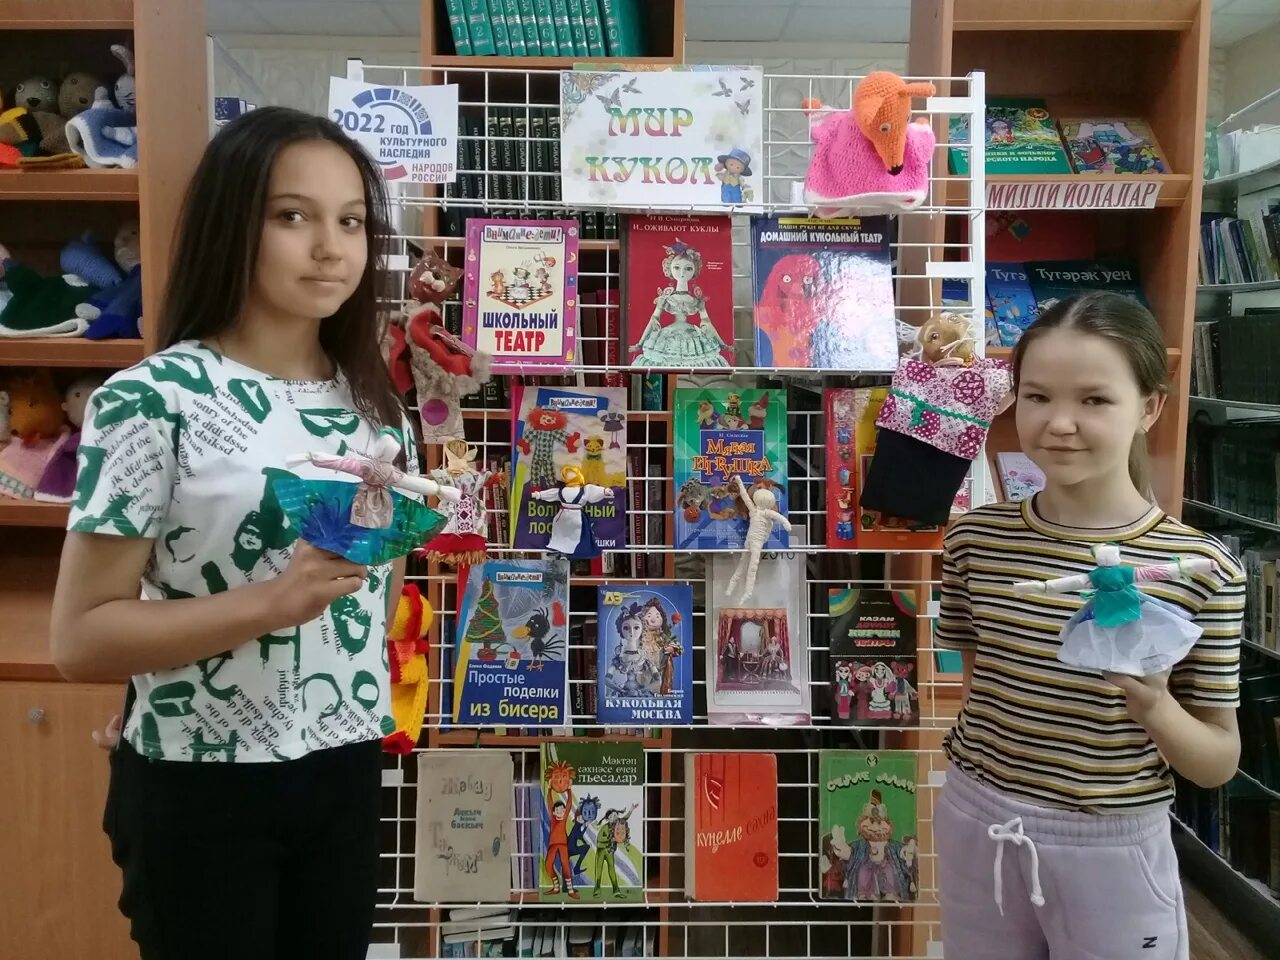 Дети оформляют выставку. Лапти выставка в библиотеке для детей. Библиотека Татарстана. Мастерим кукольных героев в сельской библиотеке своими руками. Конкурсы творчества 2022